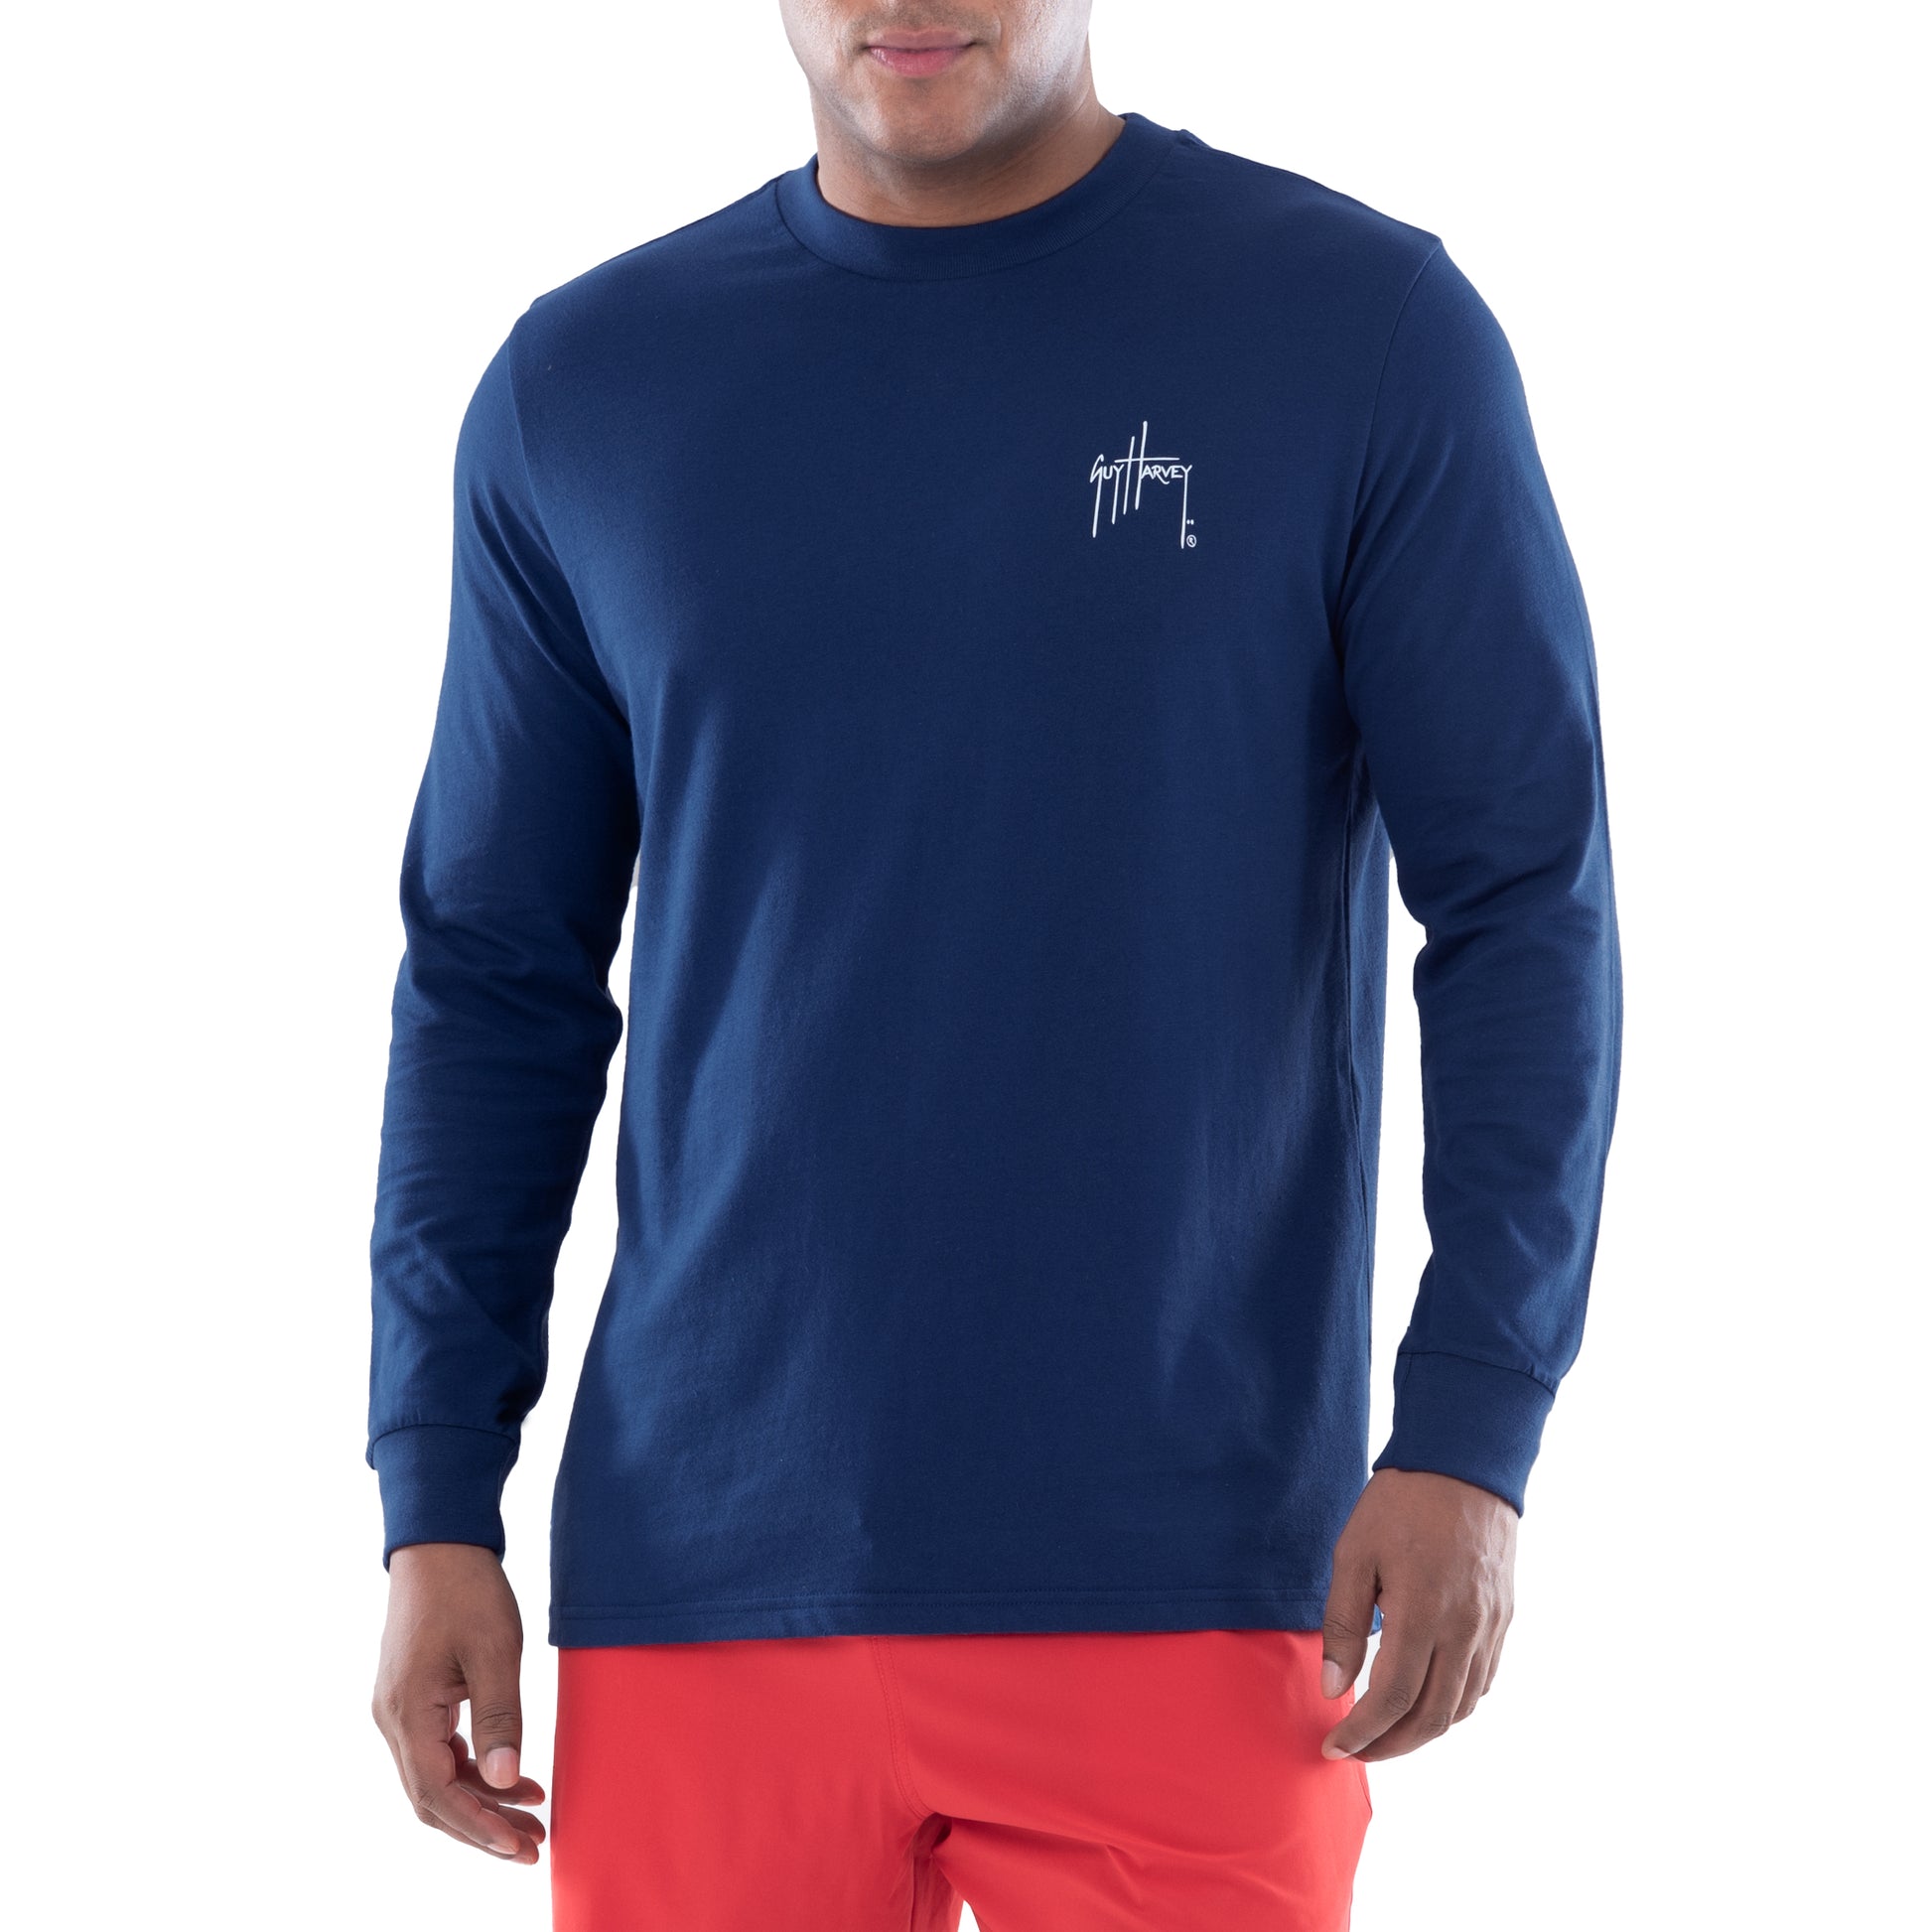 Men's Offshore Blackfin Long Sleeve T-Shirt – Guy Harvey